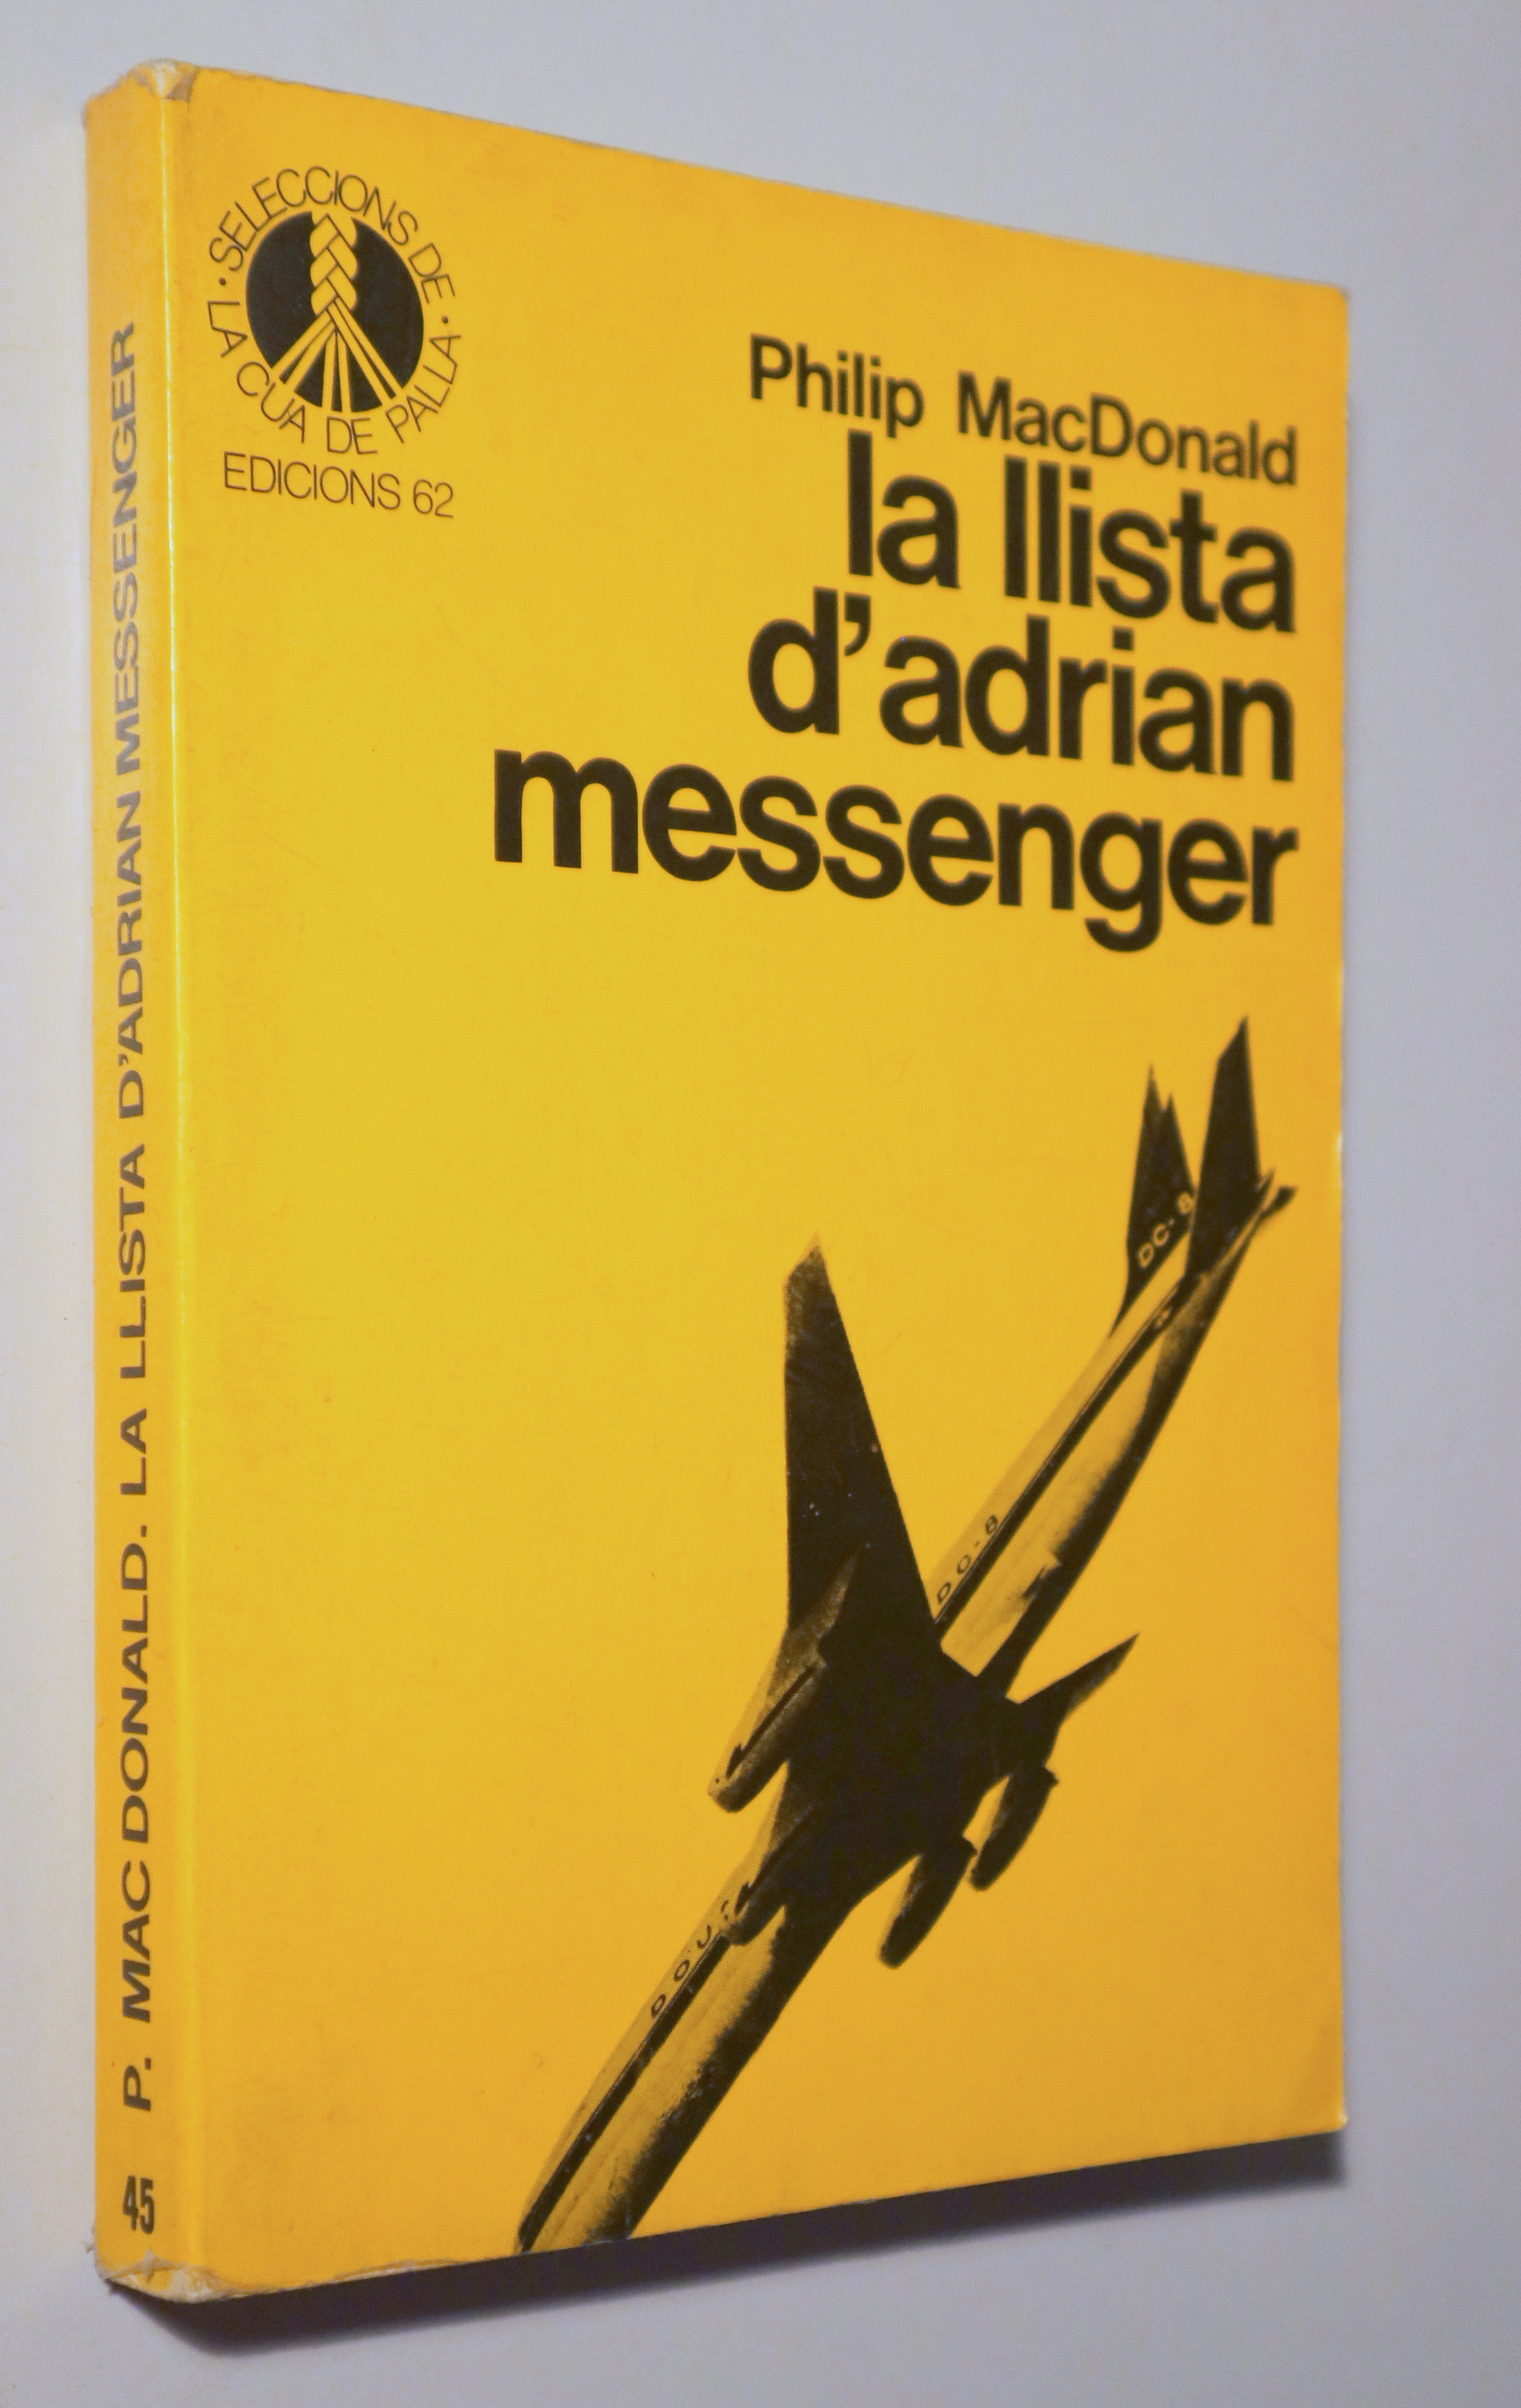 LA LLISTA D'ADRIAN MESSENGER - Barcelona 1985